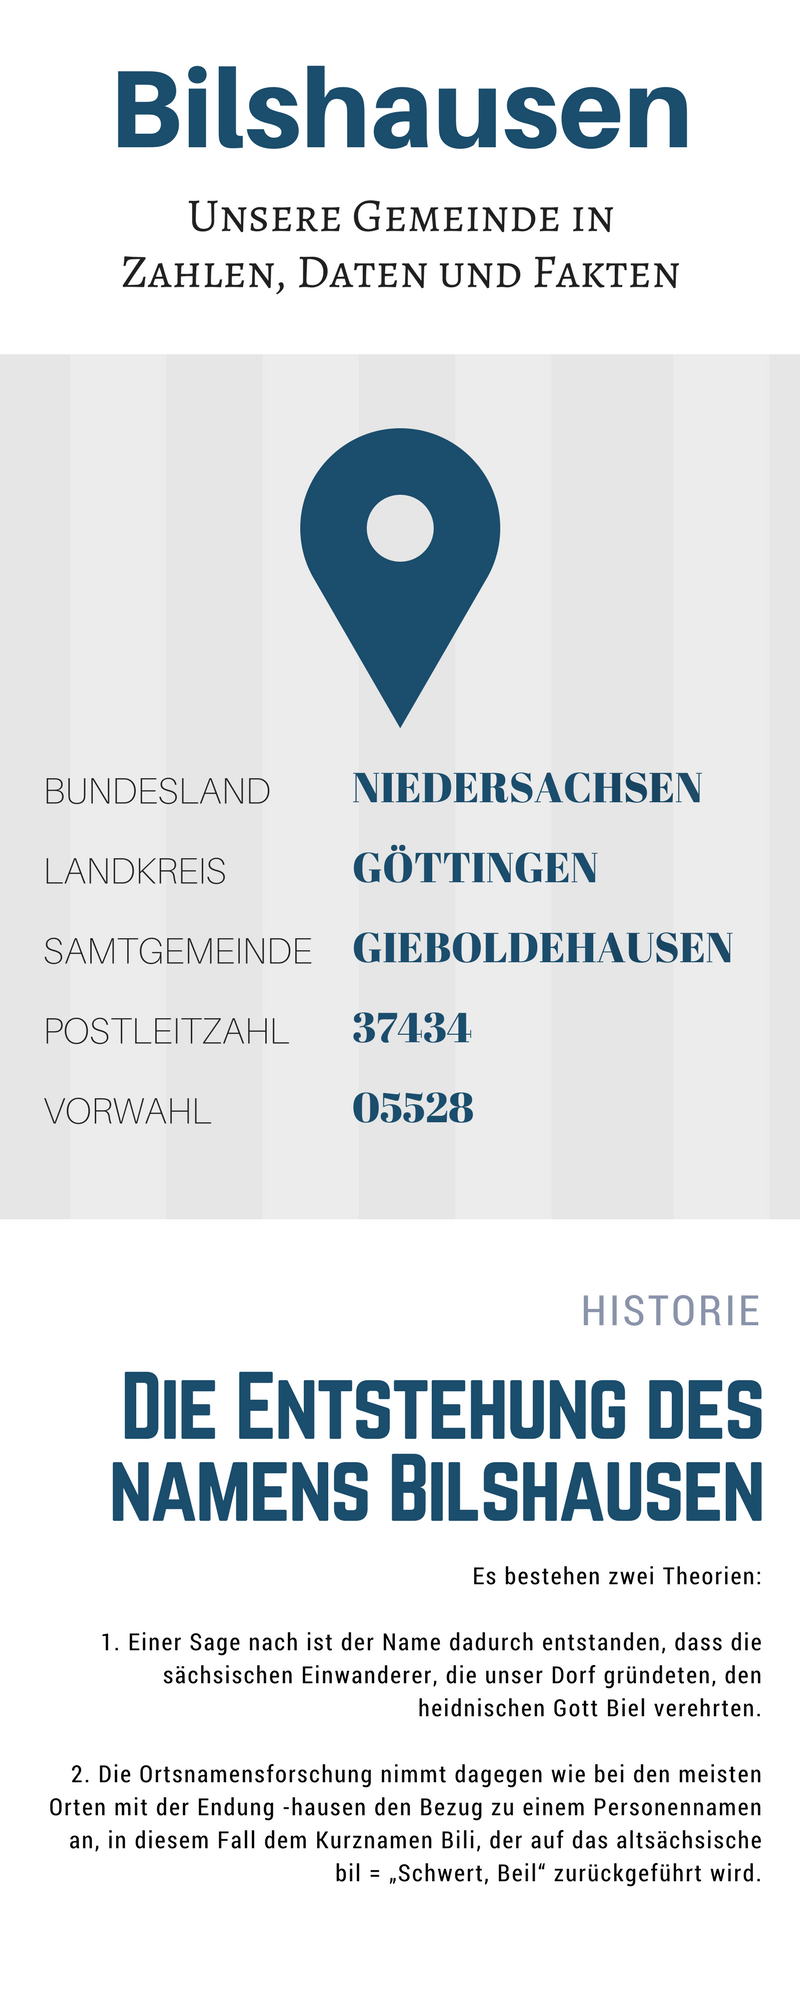 Bilshausen_Infografik1